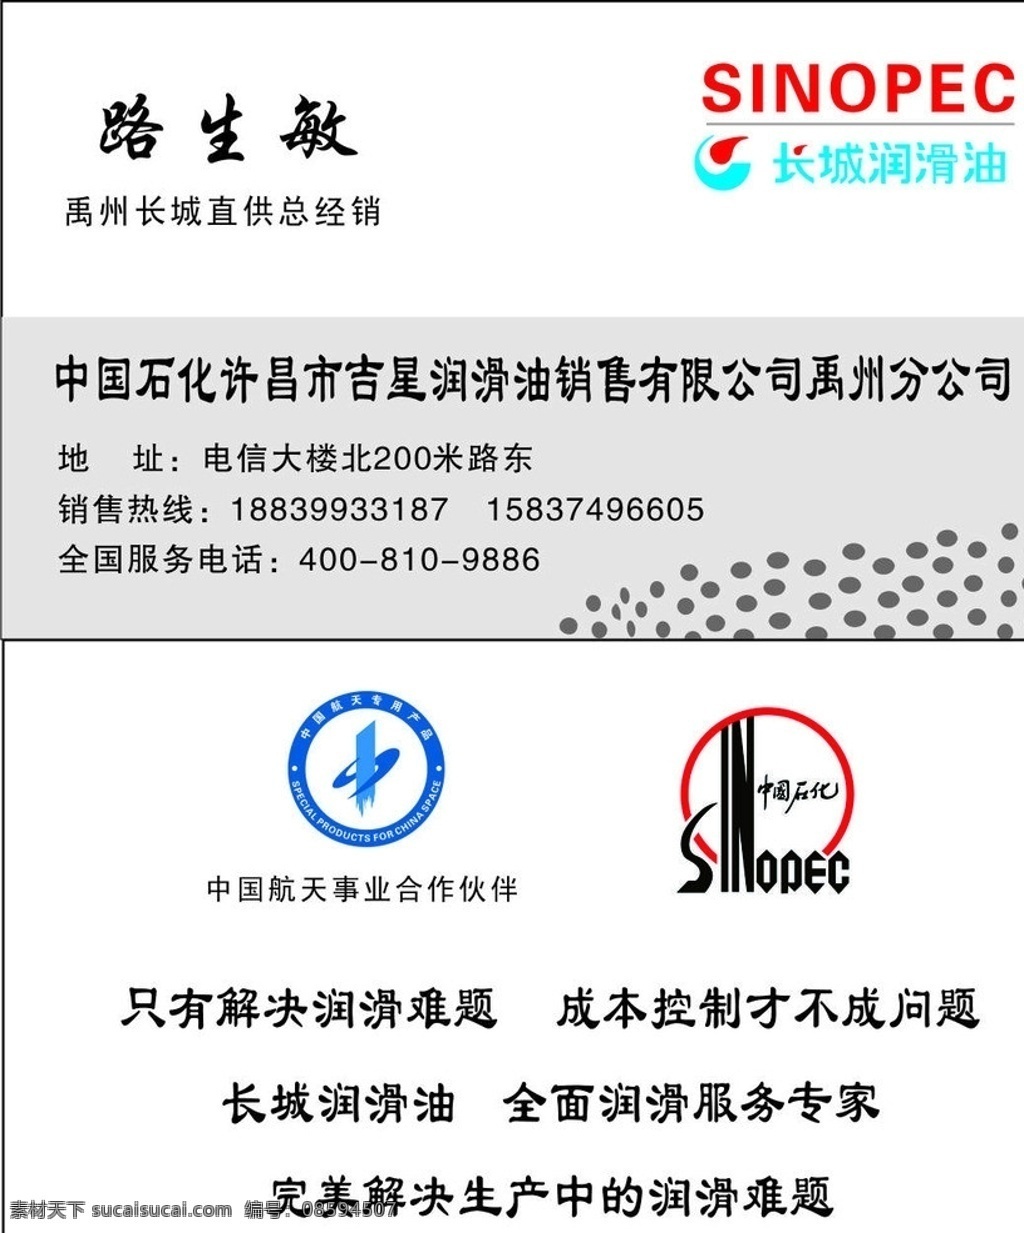 长城 润滑油 代理商 名片 标志 中国航天 事业 合作伙伴 专用 产品 中国石化 logo 名片卡片 矢量